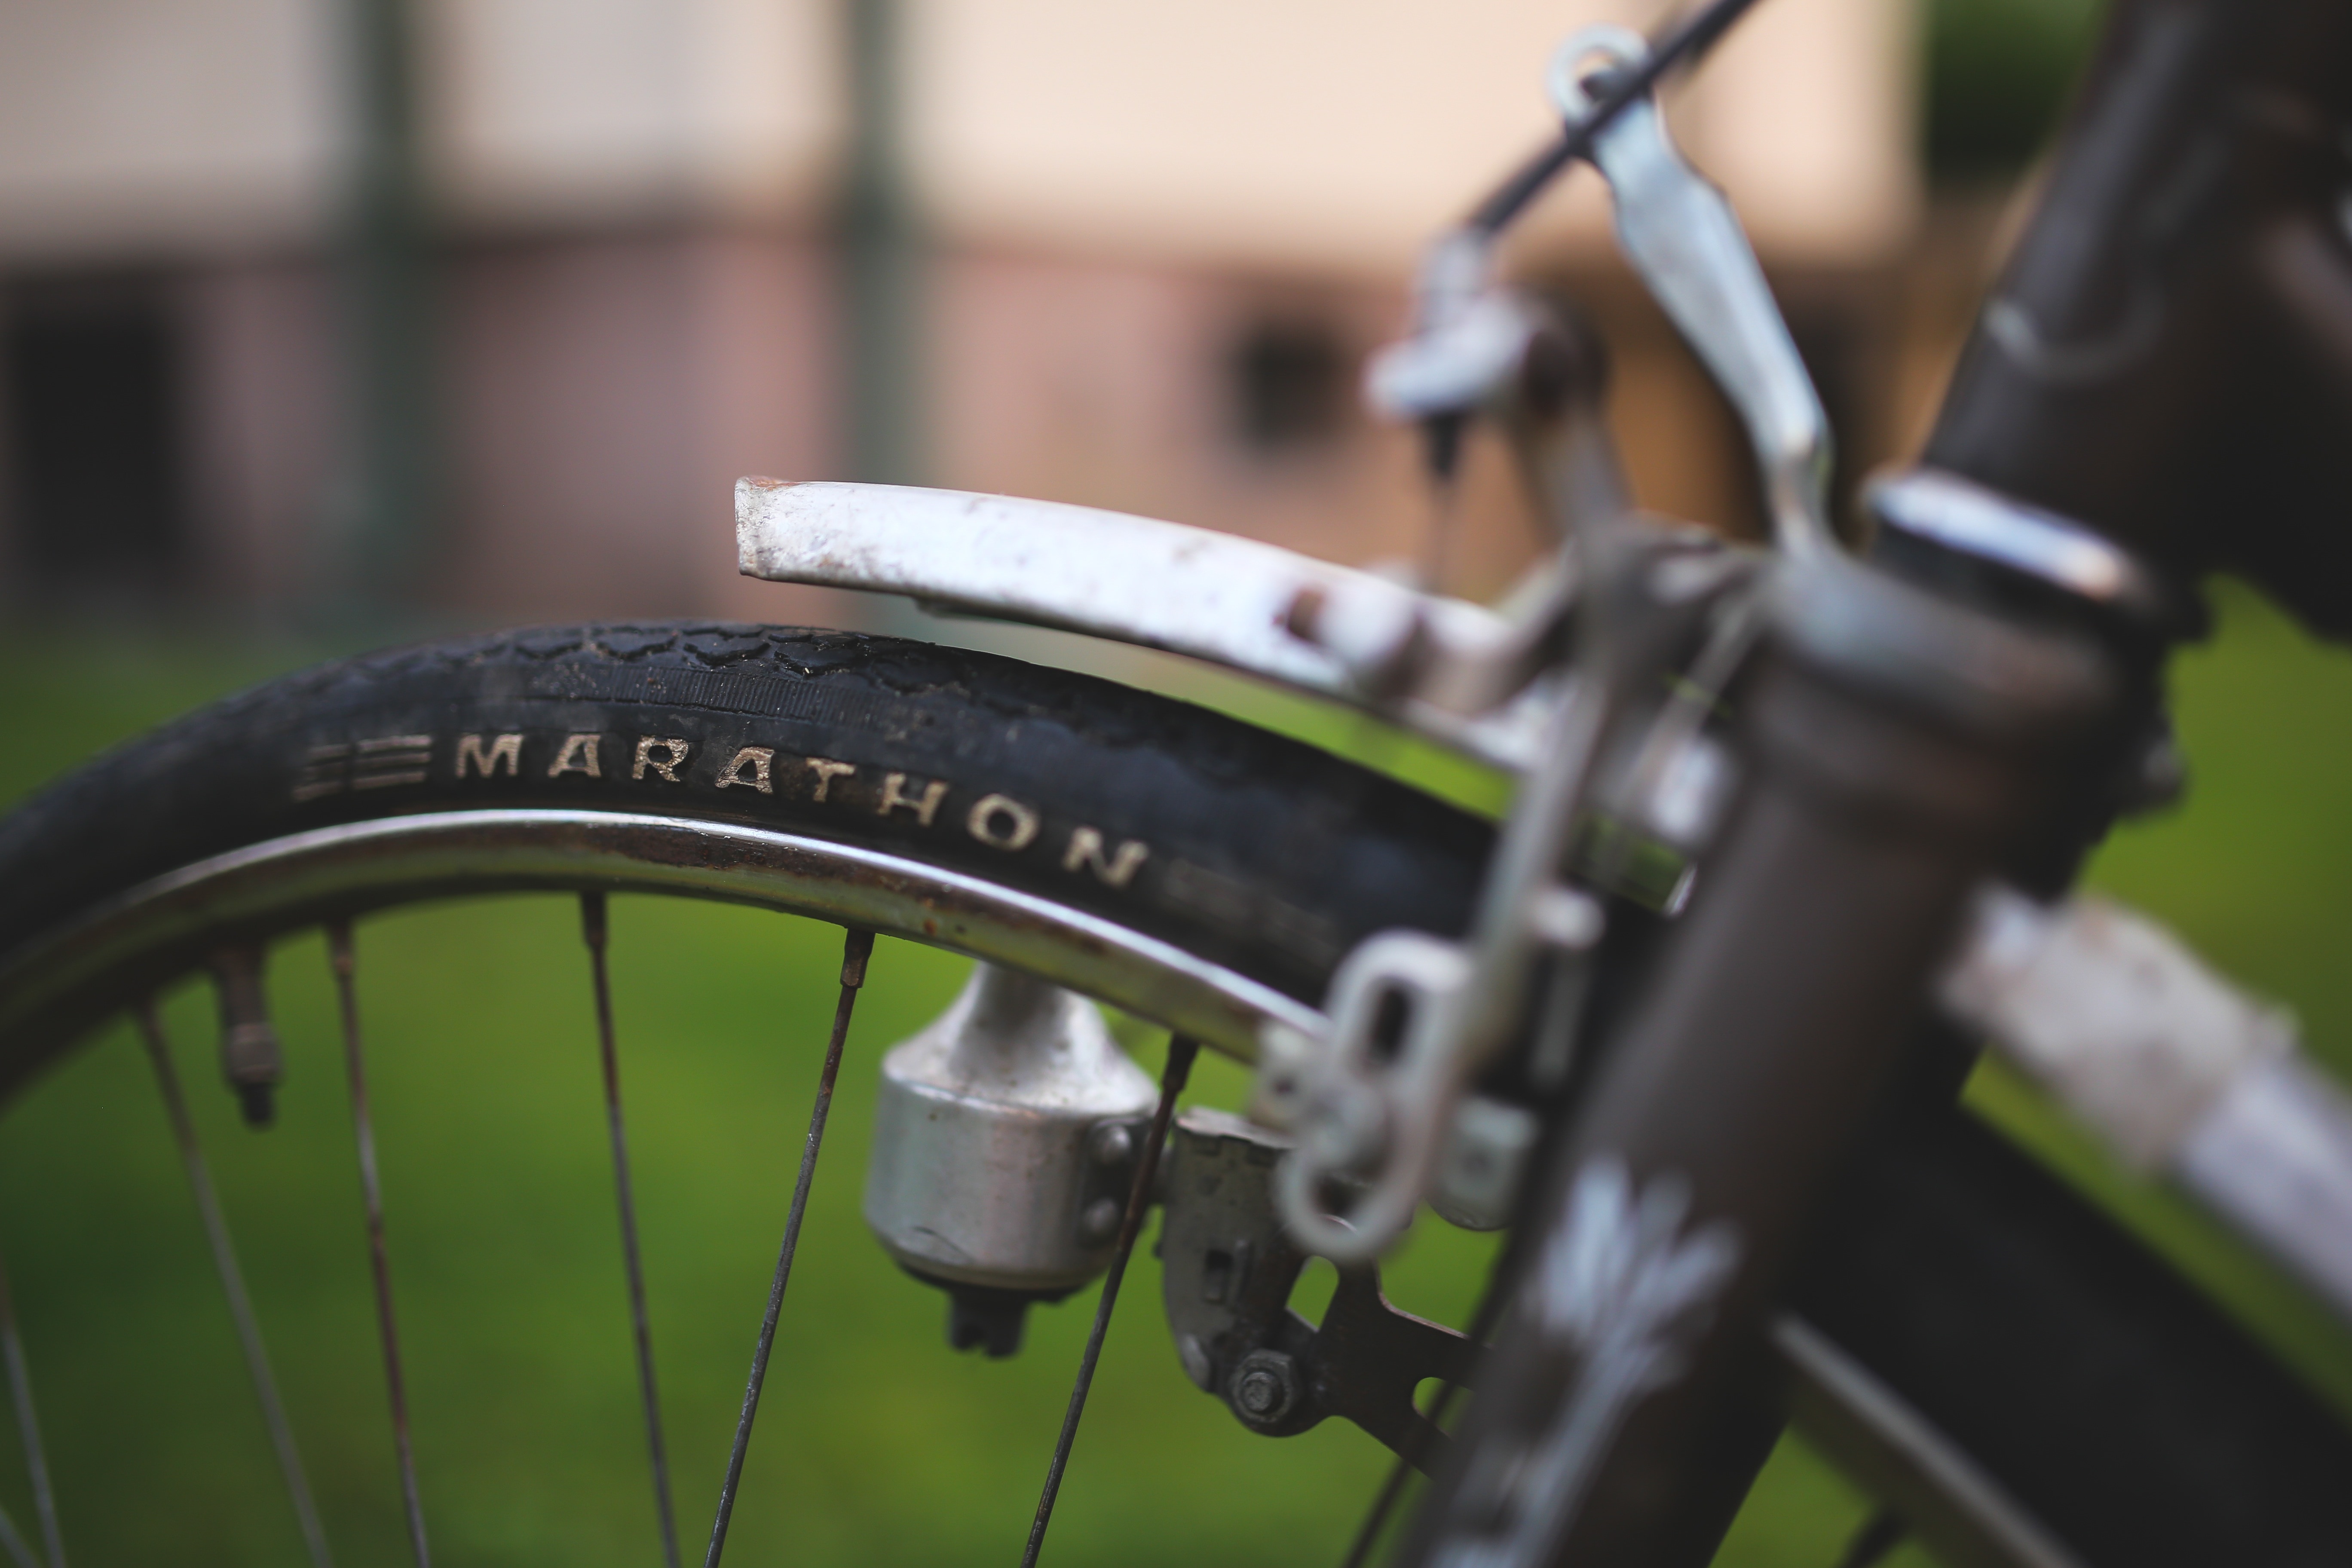 marathone bicycle tire